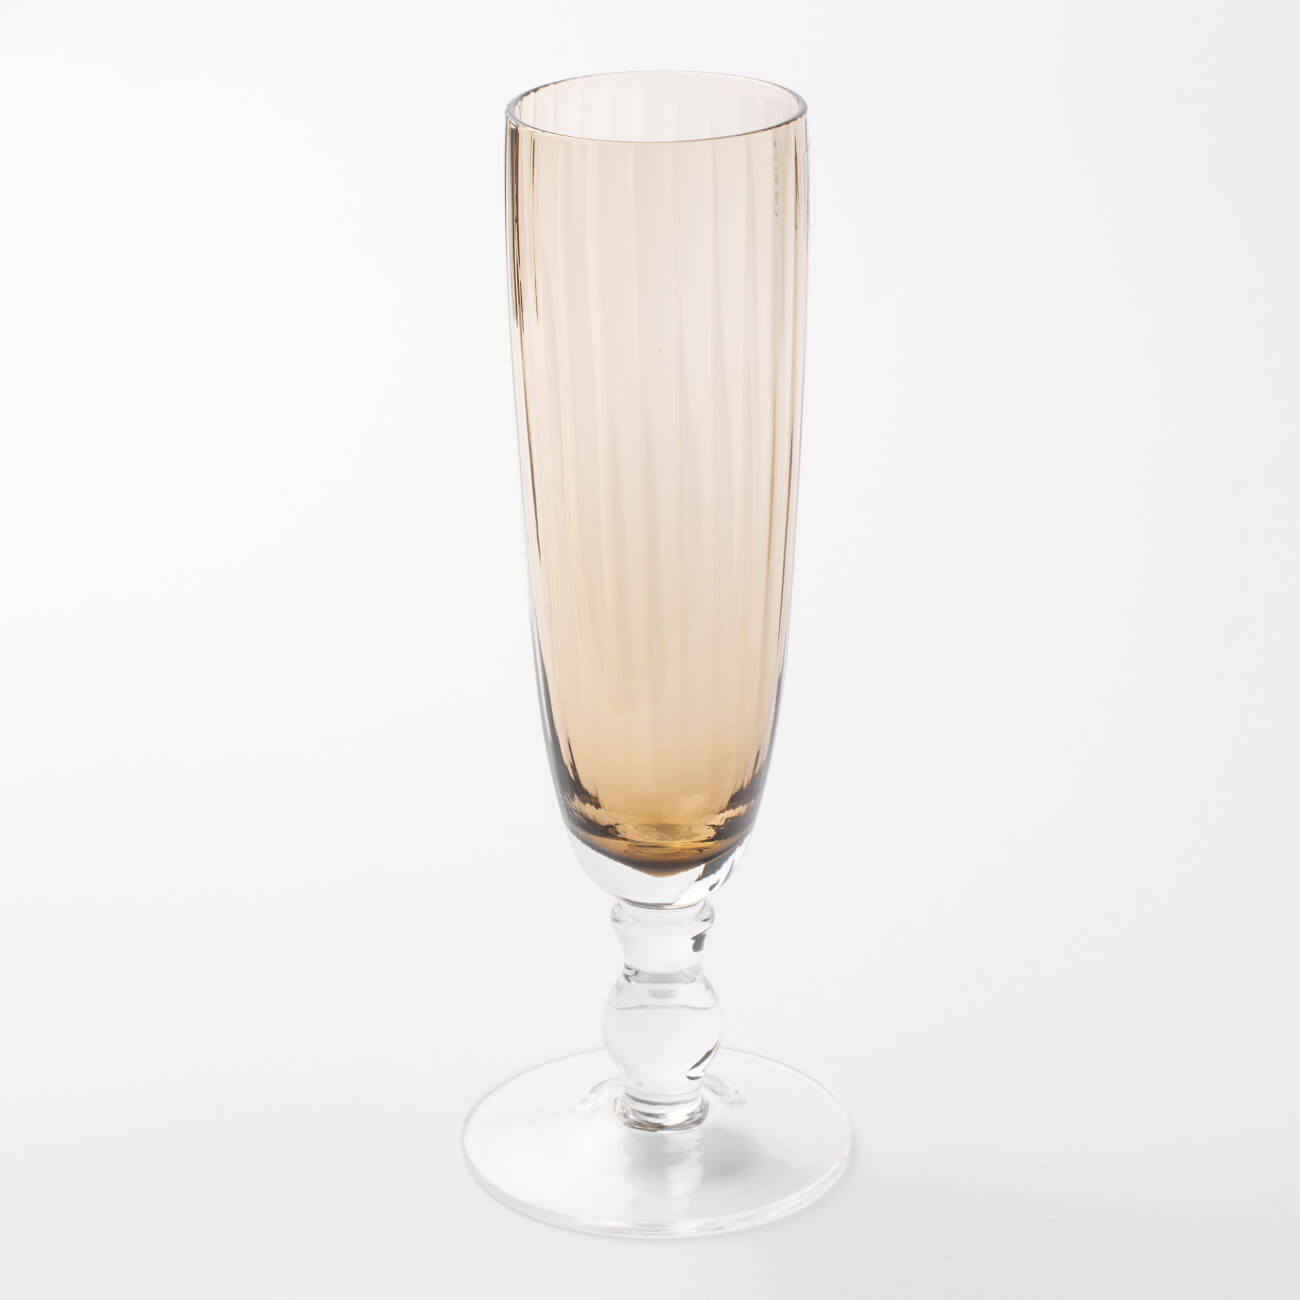 Бокал-кубок для шампанского, 210 мл, стекло, янтарный, Caserta бокал qwerty